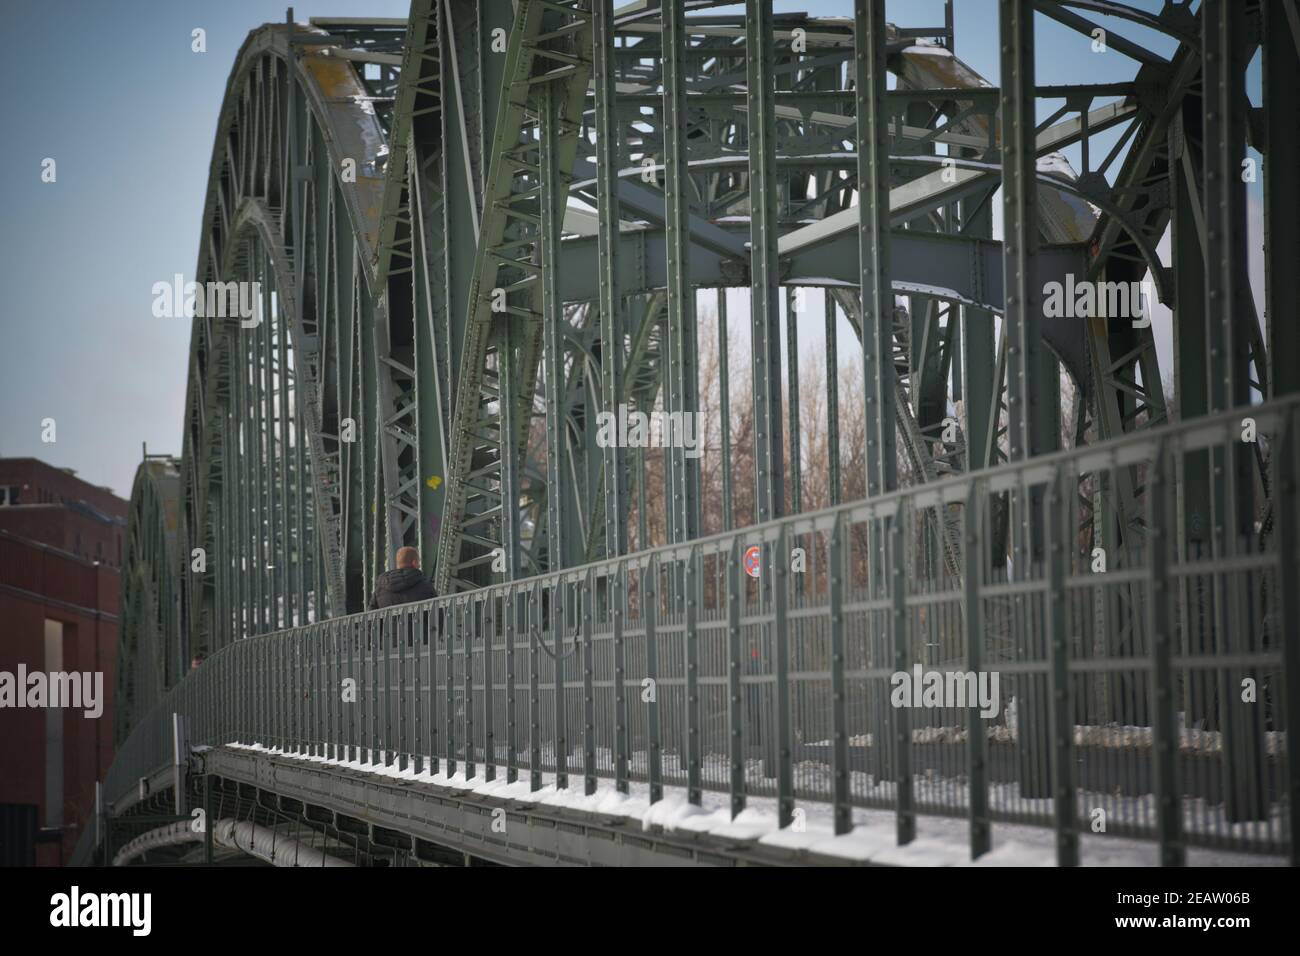 Eiswerderbrücke, Havel, Haselhorst, Spandau, Berlin, Deutschland Stock Photo